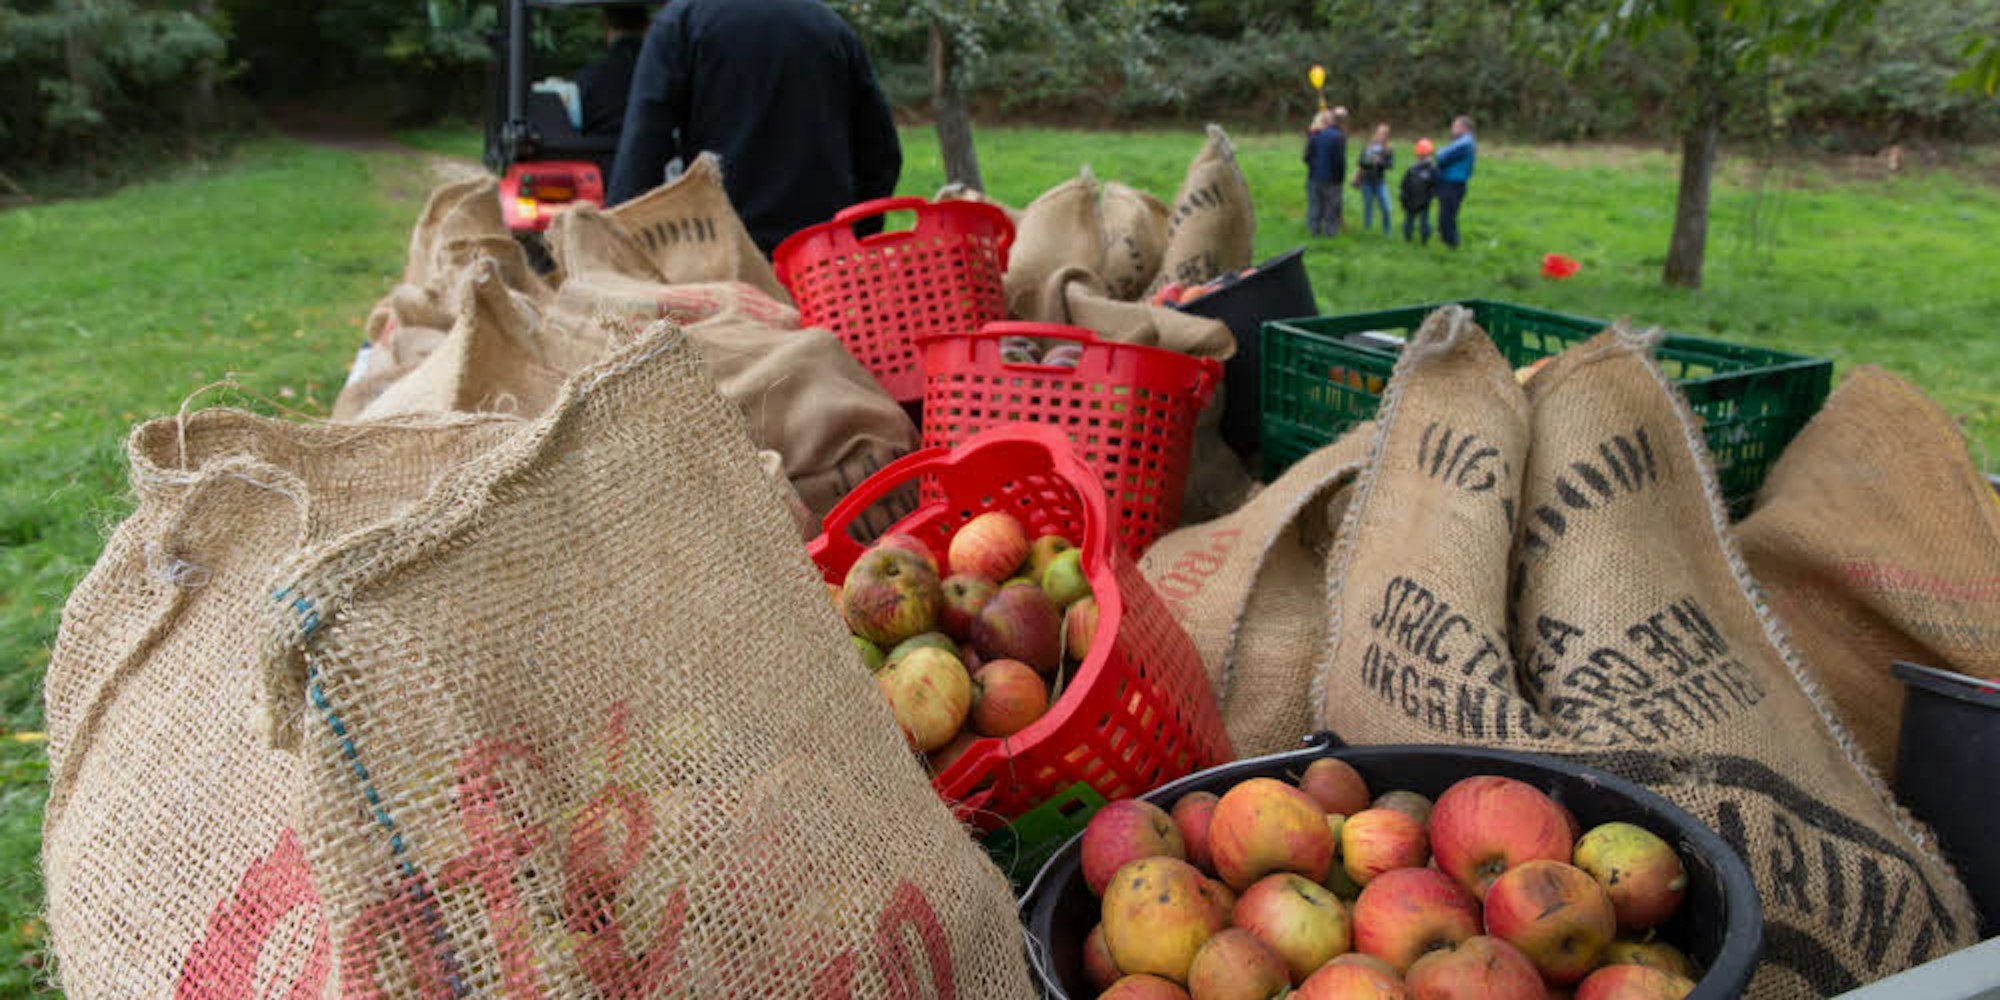 Reiche Ernte in Oberdollendorf: die Äpfel werden mit einem Traktor abtransportiert.